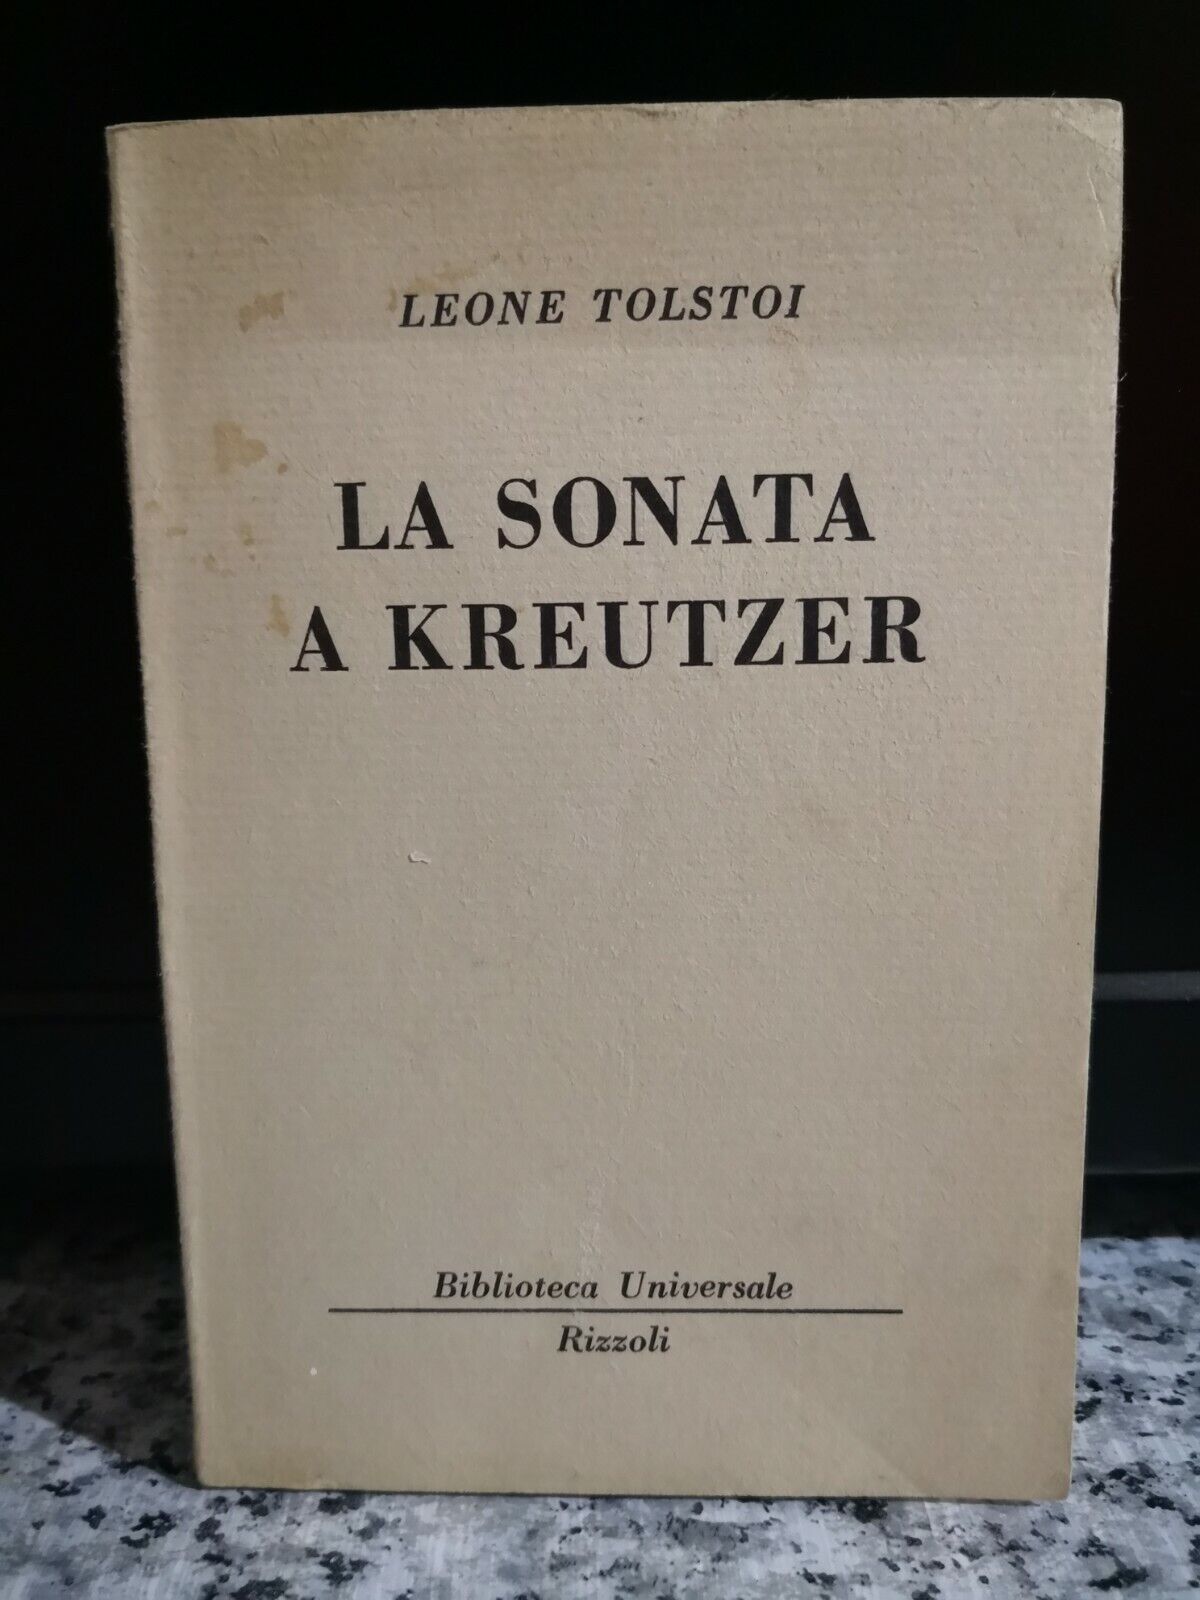   La sonata a Kreutzer 14? edizione  di Leone Tolstoi,  1949,  Rizzoli -F